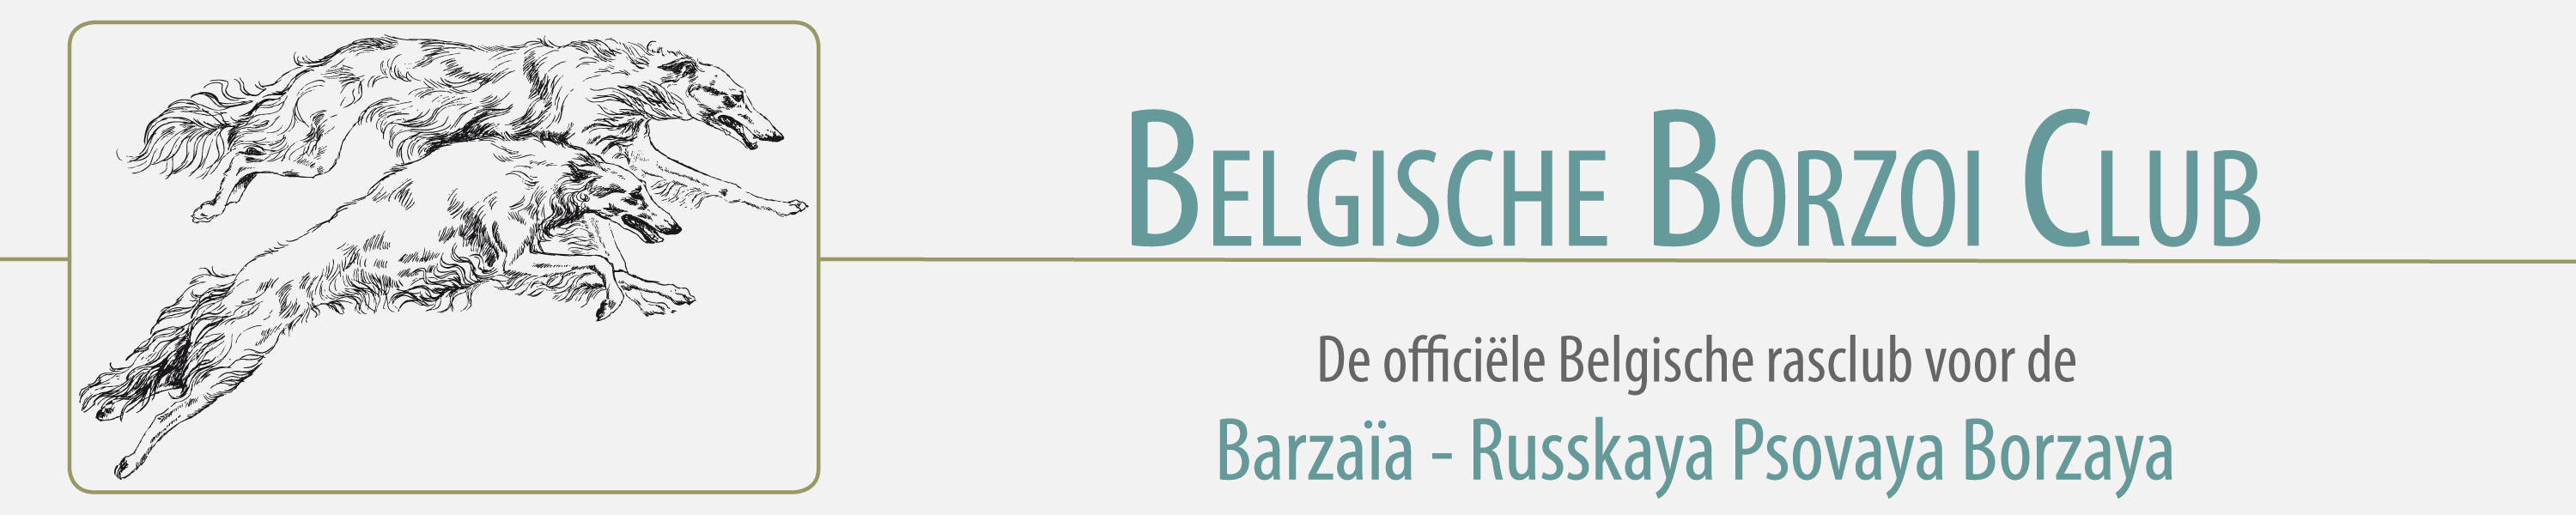 Belgische Borzoi Club